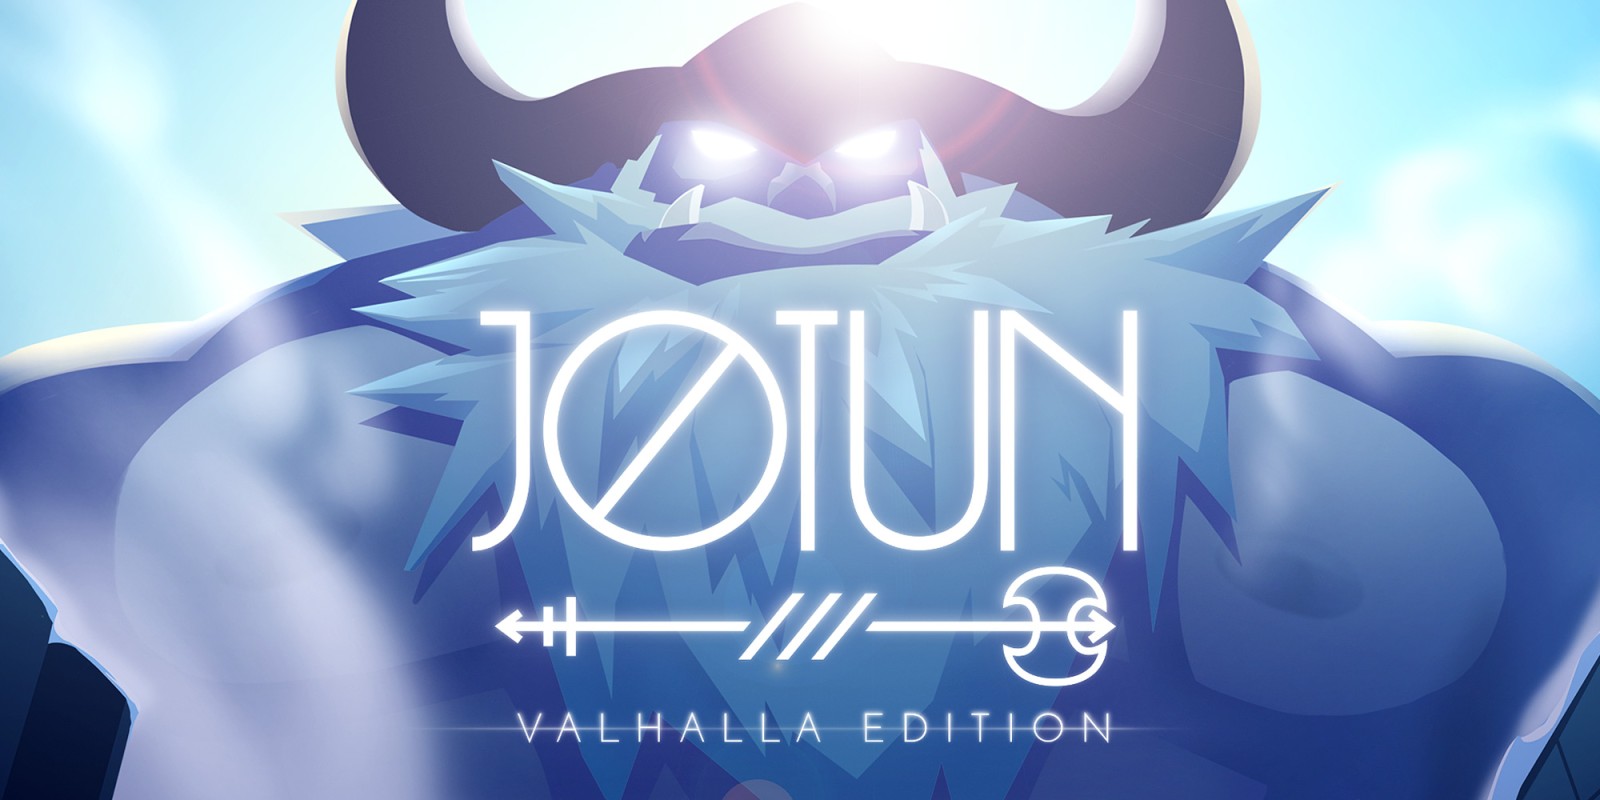 jotun valhalla edition achievement guide